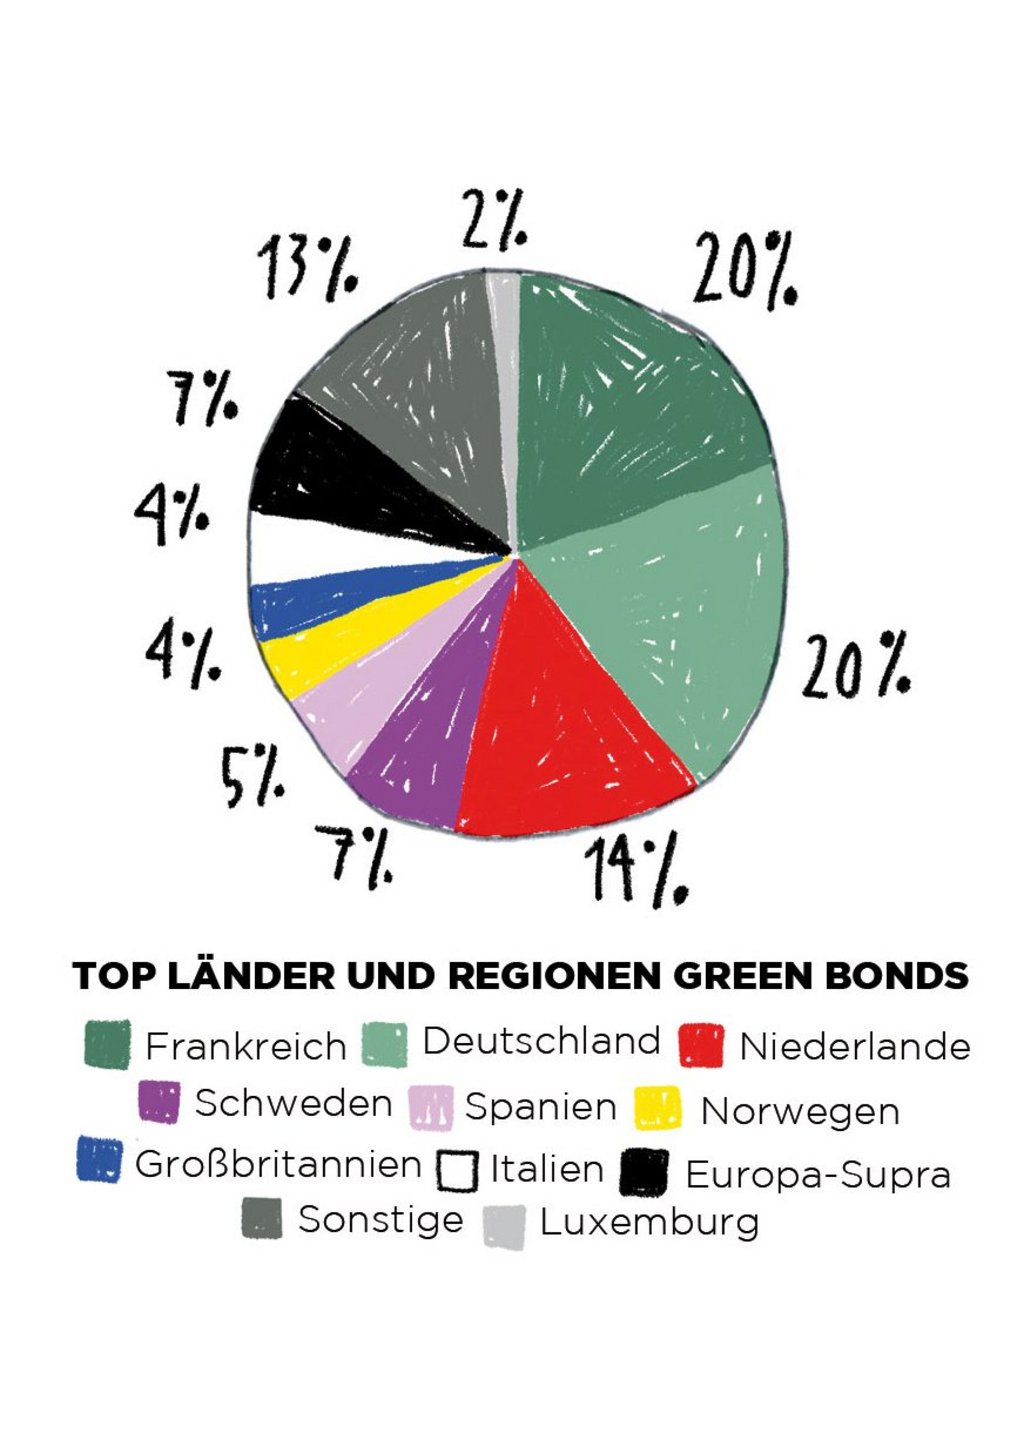 Illustration eines Kuchendiagramms, das sichtbar macht welche Länder welchen Anteil an nachhaltigen Geldanlagen besitzt. Frankreich und Deutschland haben mit jeweils 20 Prozent den größten Anteil.